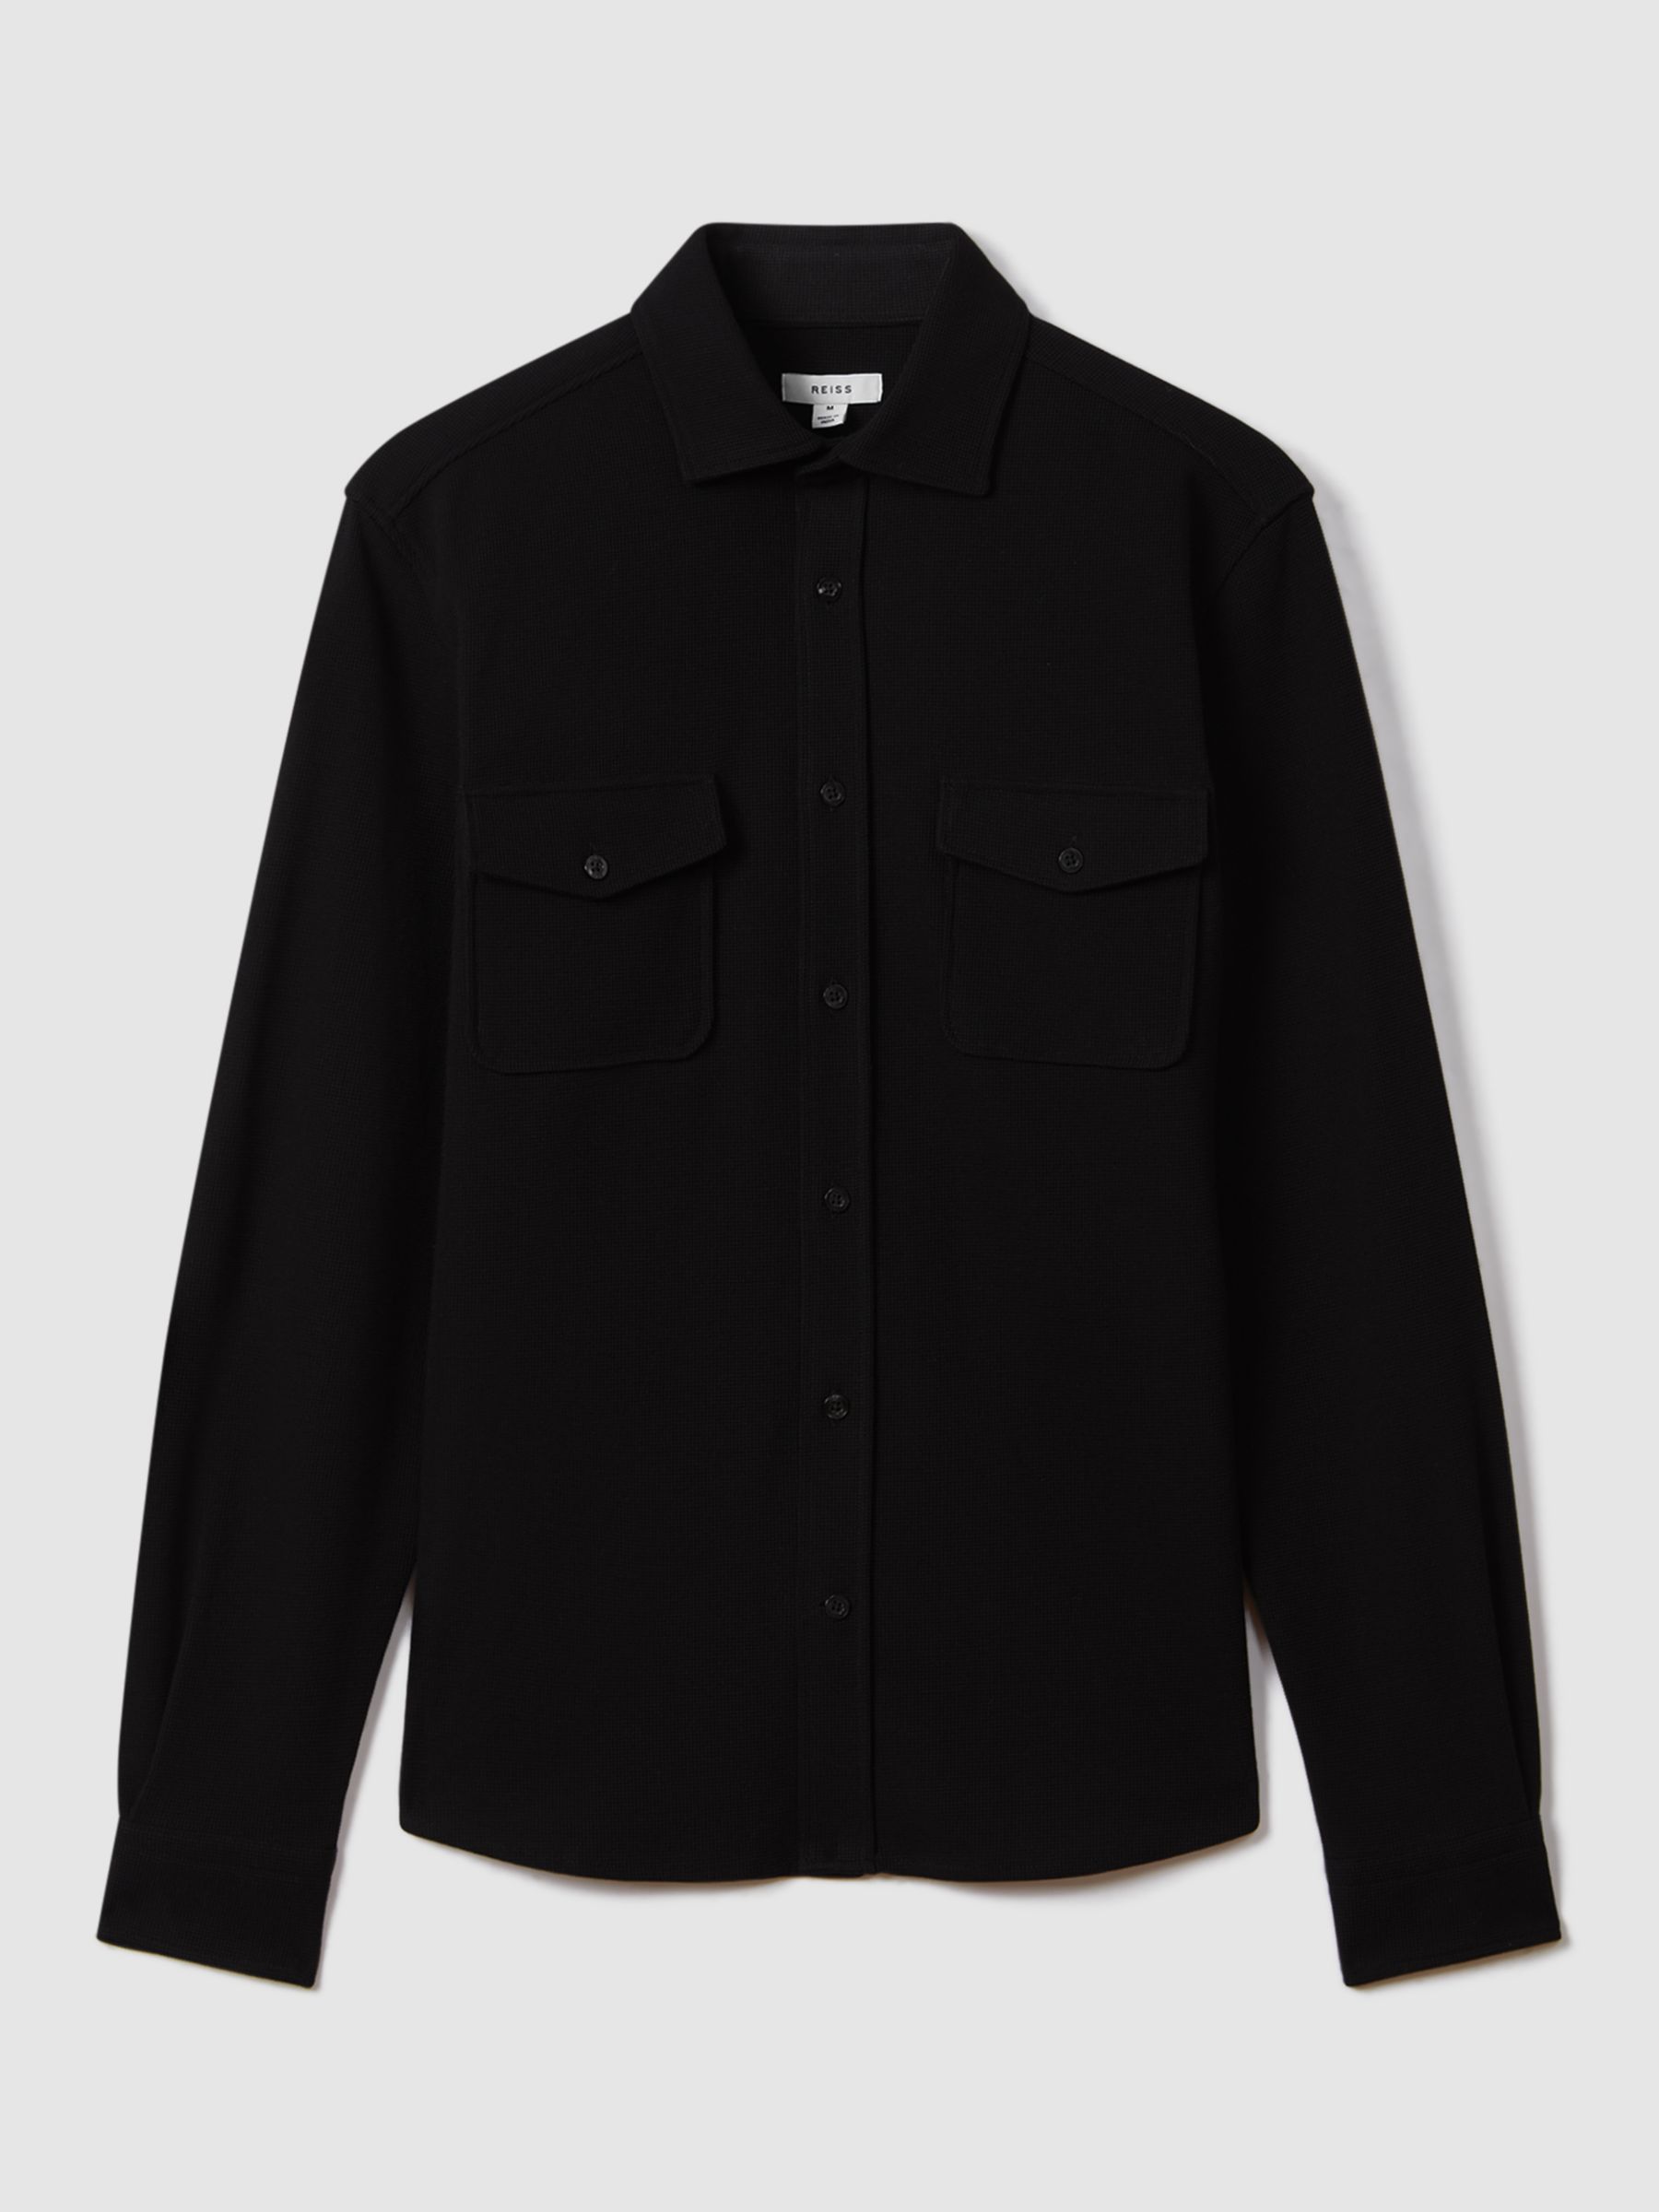 Reiss Ragan Long Sleeve Jersey Textured Shirt, Black, XS